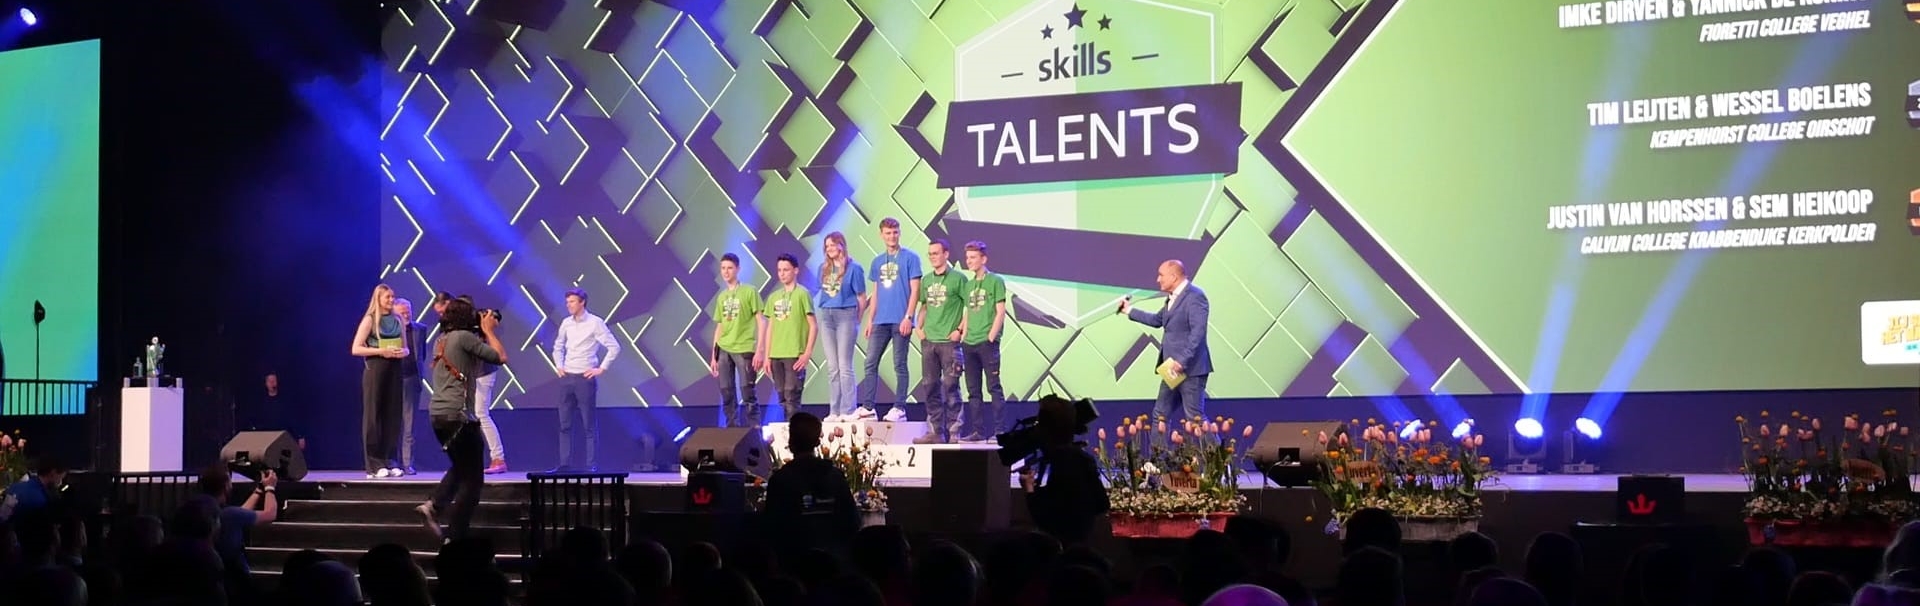 Skills talent podium